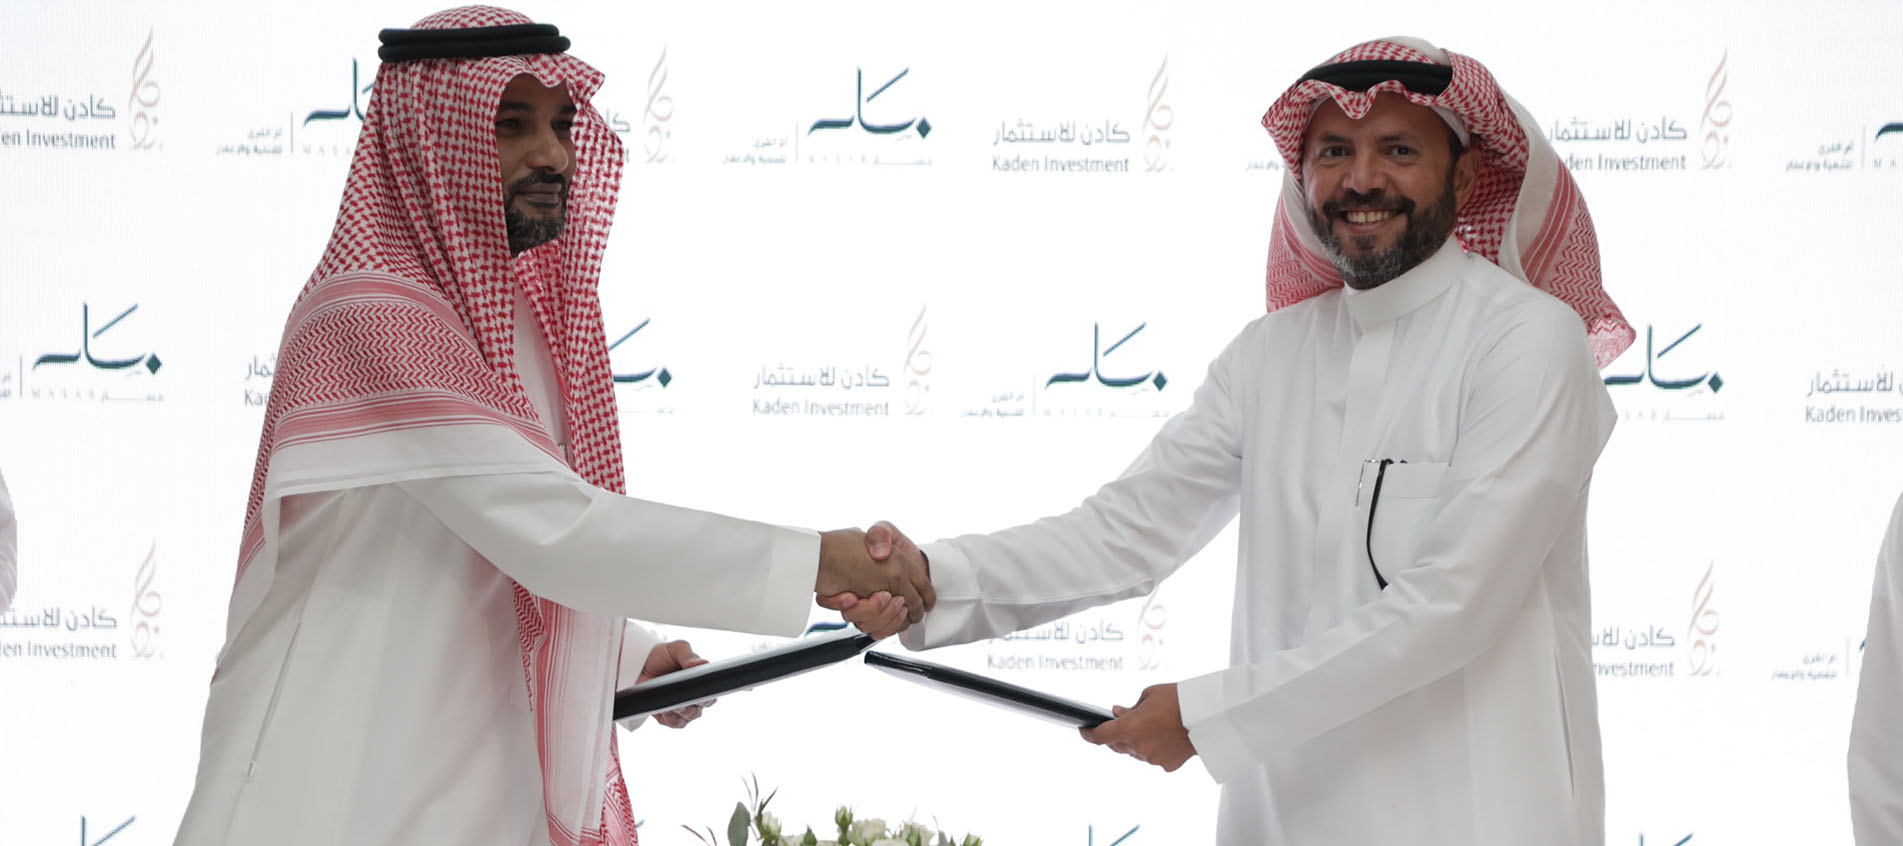 كادن للاستثمار توقع شراكة استراتيجية مع شركة أم القرى لتطوير وتنفيذ "واجهة مسار" في مكة المكرمة